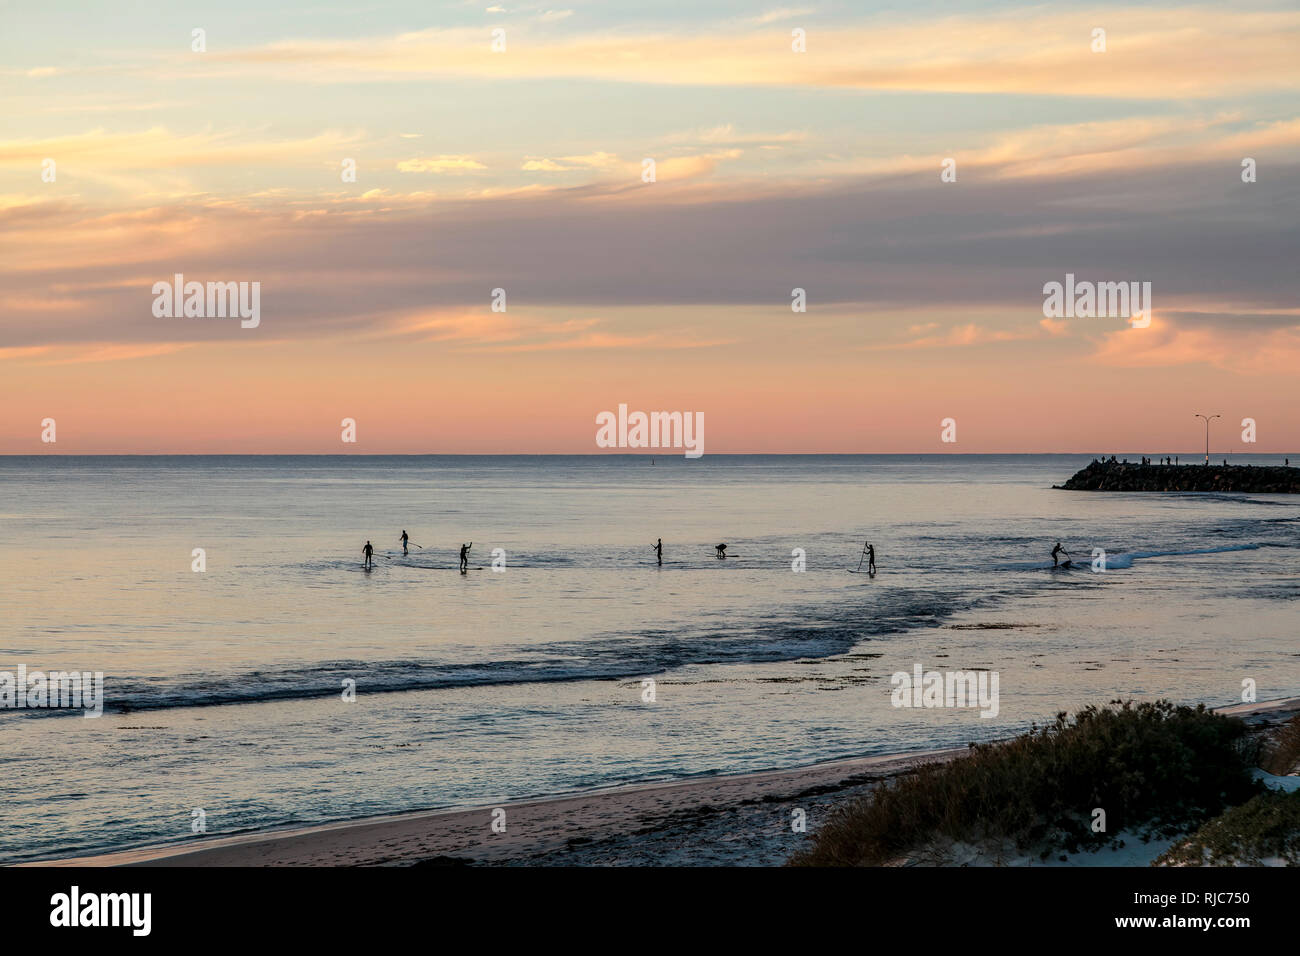 Gruppo di persone paddleboarding al tramonto, Cottesloe Beach, Australia occidentale, Australia Foto Stock